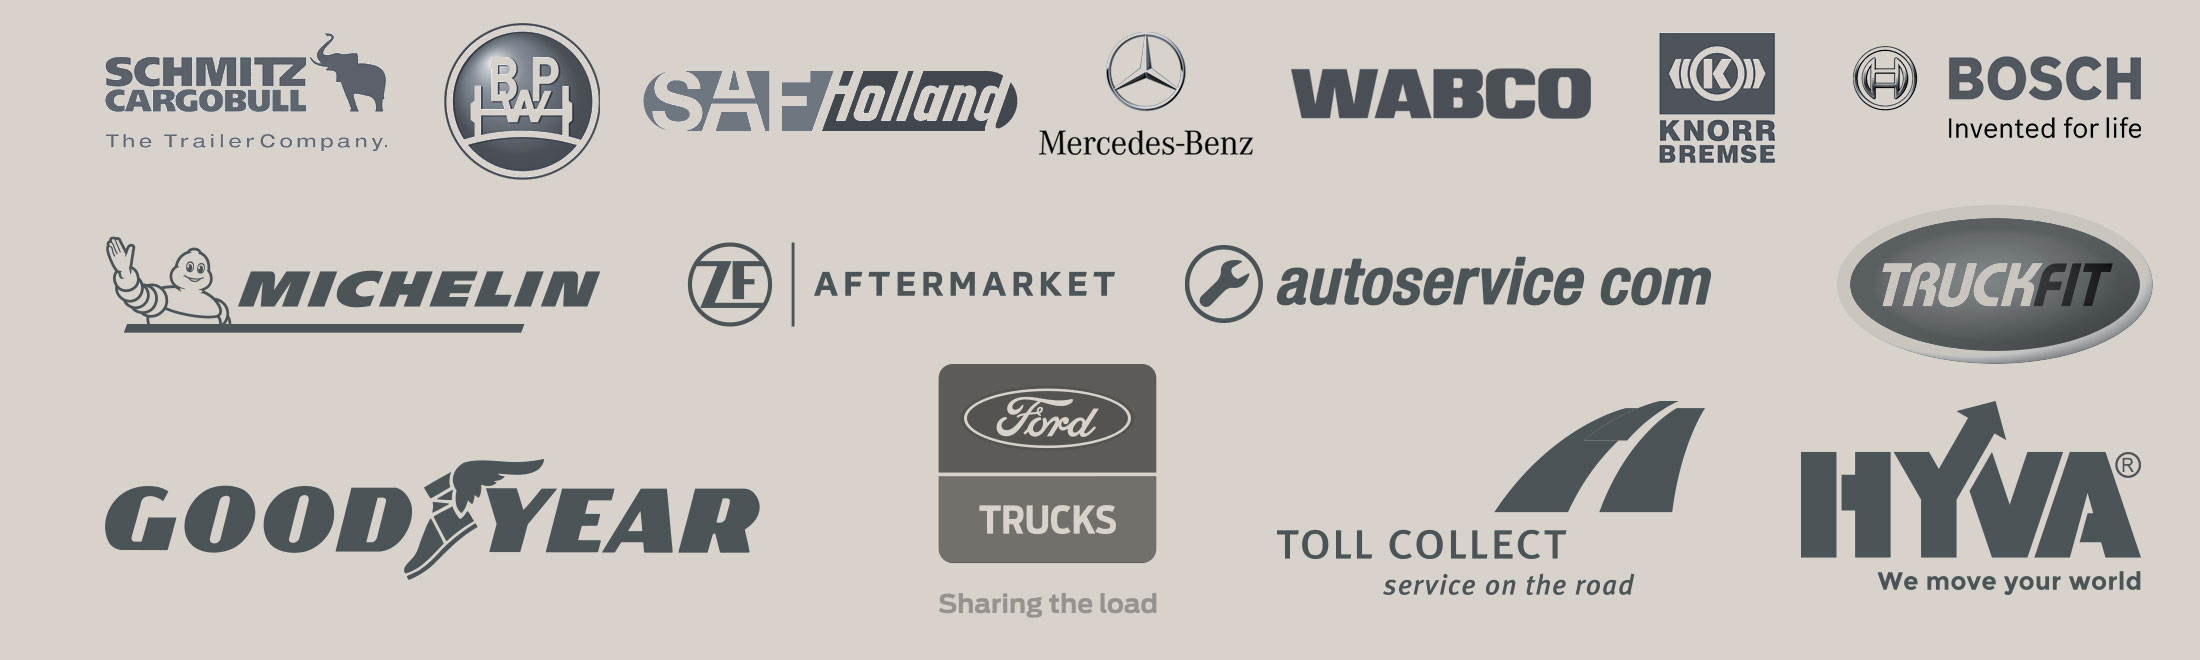 Truck-Center Backes GmbH – Partner